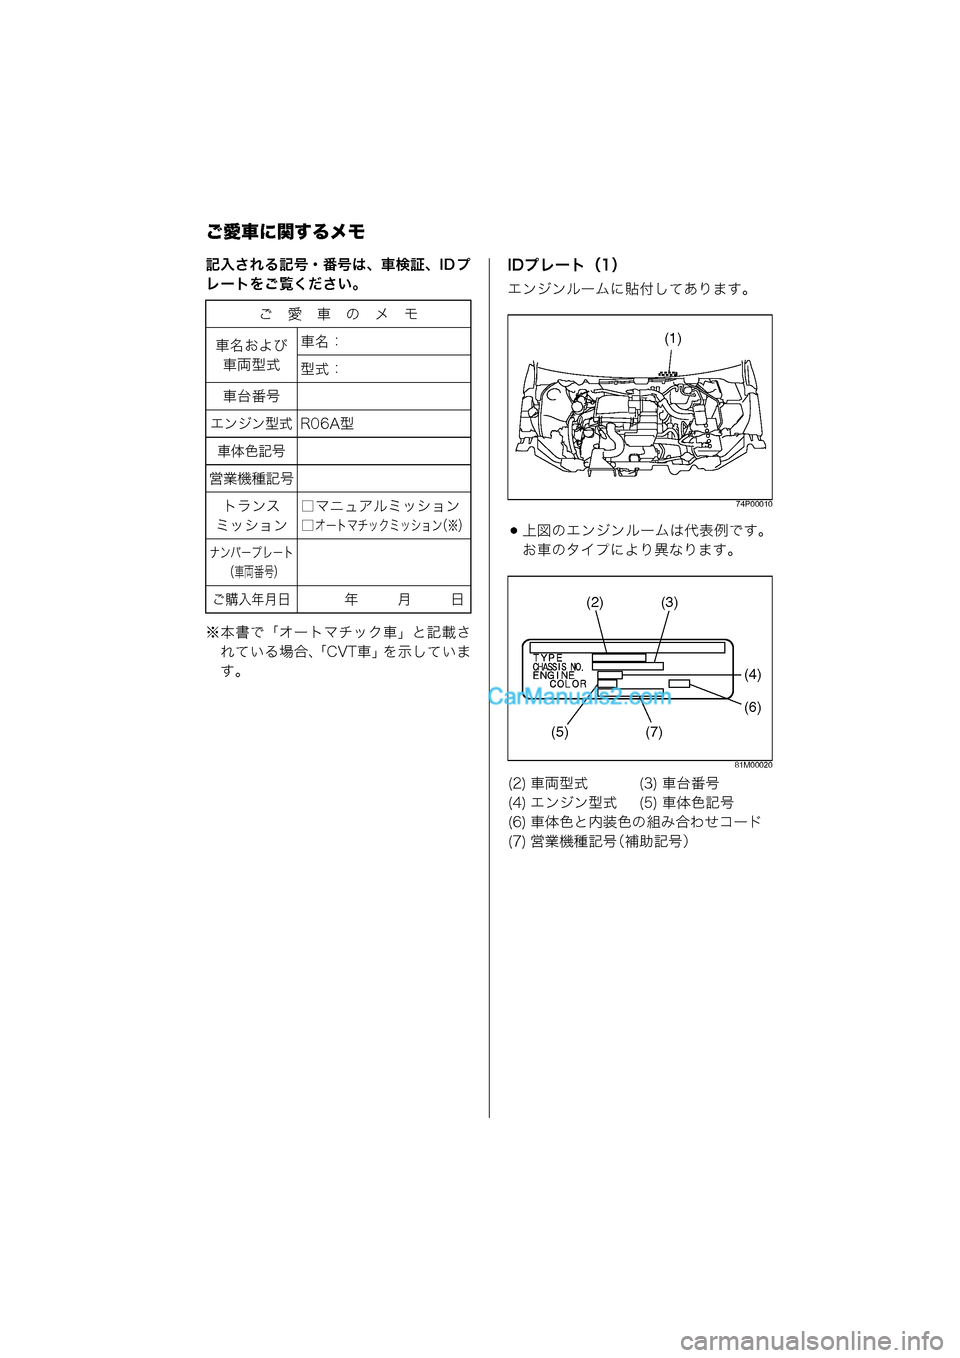 MAZDA MODEL CARROL 2015  取扱説明書 (キャロル) (in Japanese) ご愛車に関するメモ
記入される記号・番号は、車検証、ID プ
レートをご覧ください。
※本書で「オートマチック車」と記載されている場合、「CVT�